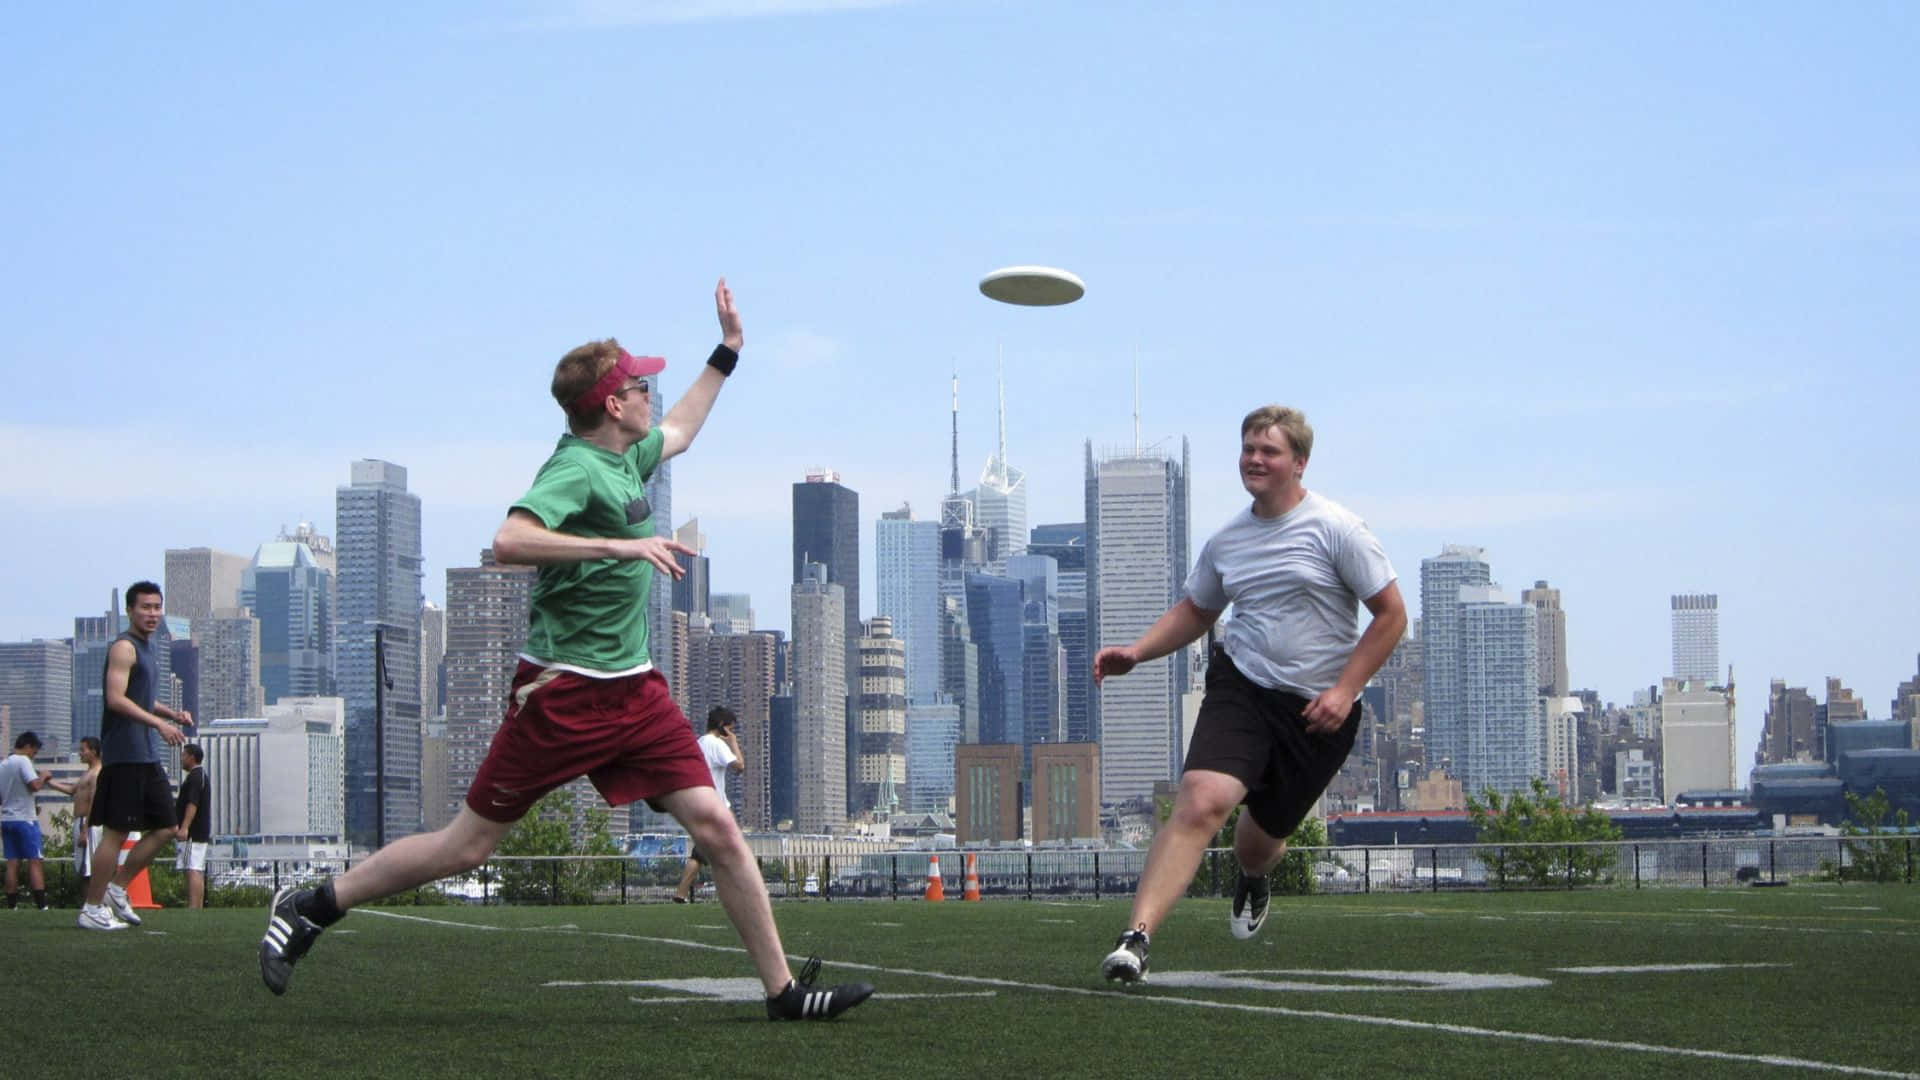 Trovala Massima Soddisfazione Ed Eccitazione Con Un Gioco Di Frisbee Ad Alta Definizione